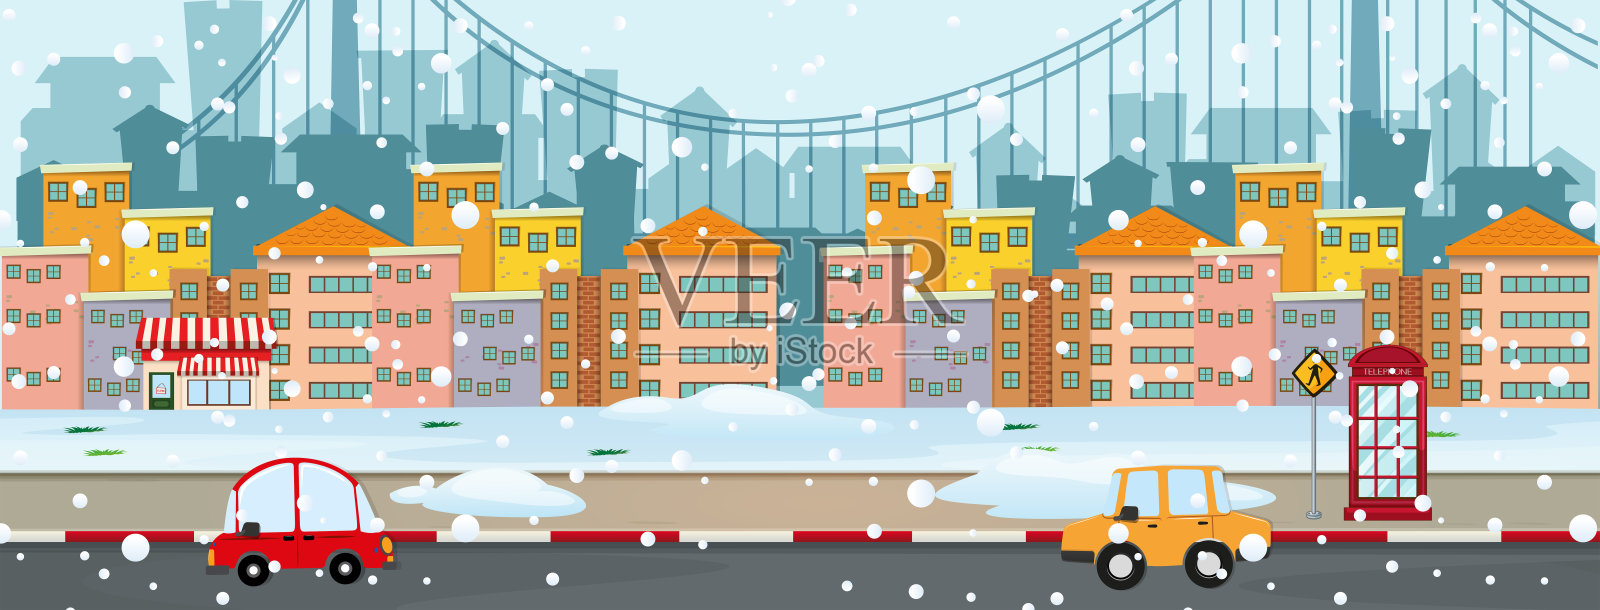 背景场景与雪在城市插画图片素材